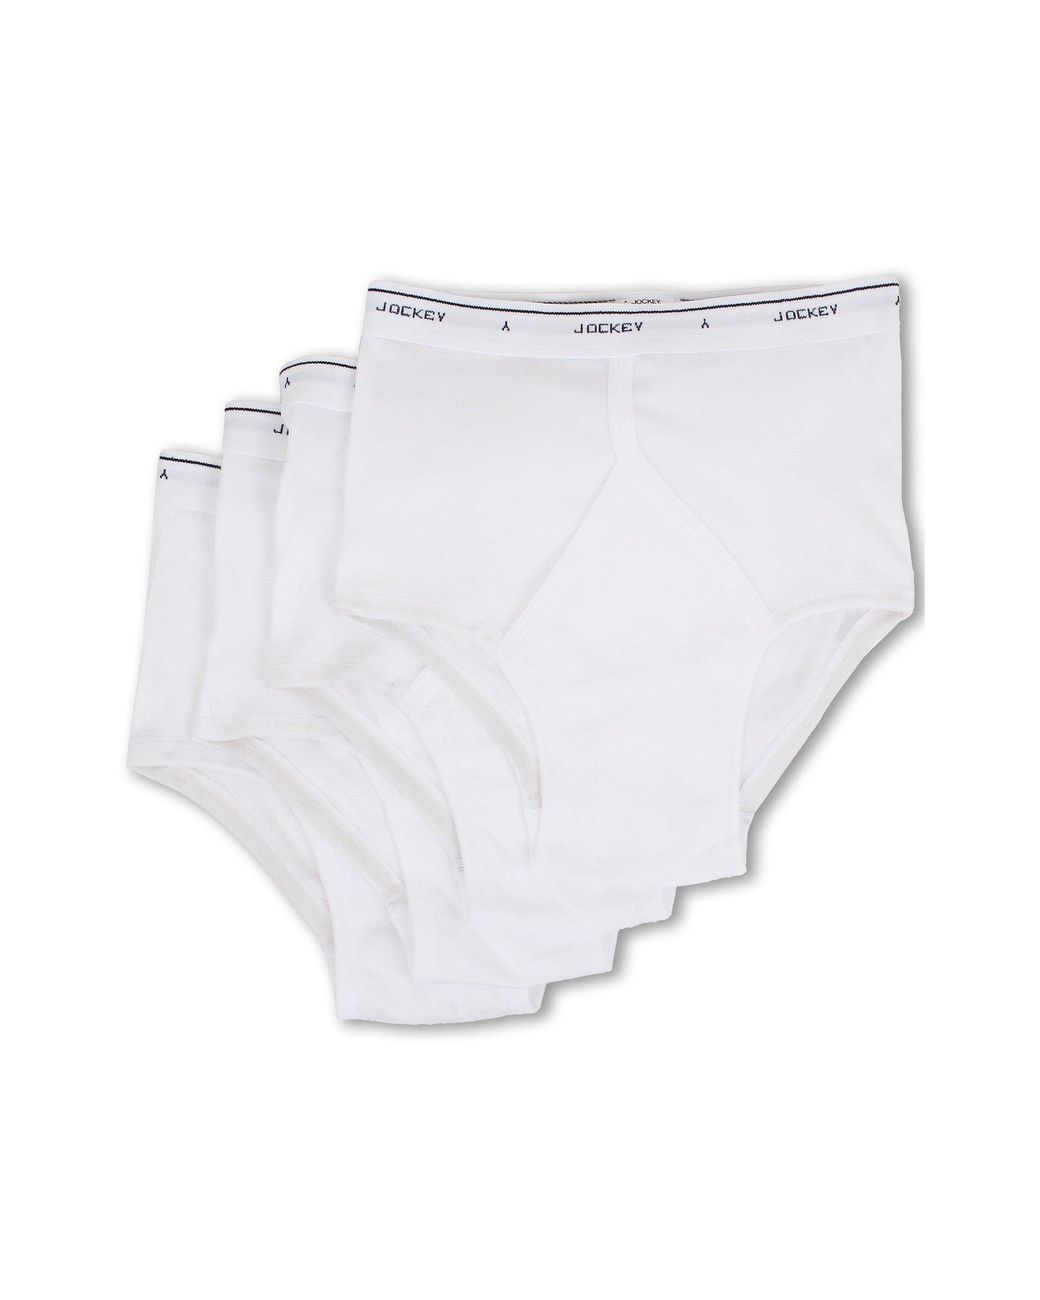 Jockey Cotton Full-rise Brief 4-pack in White for Men - Lyst